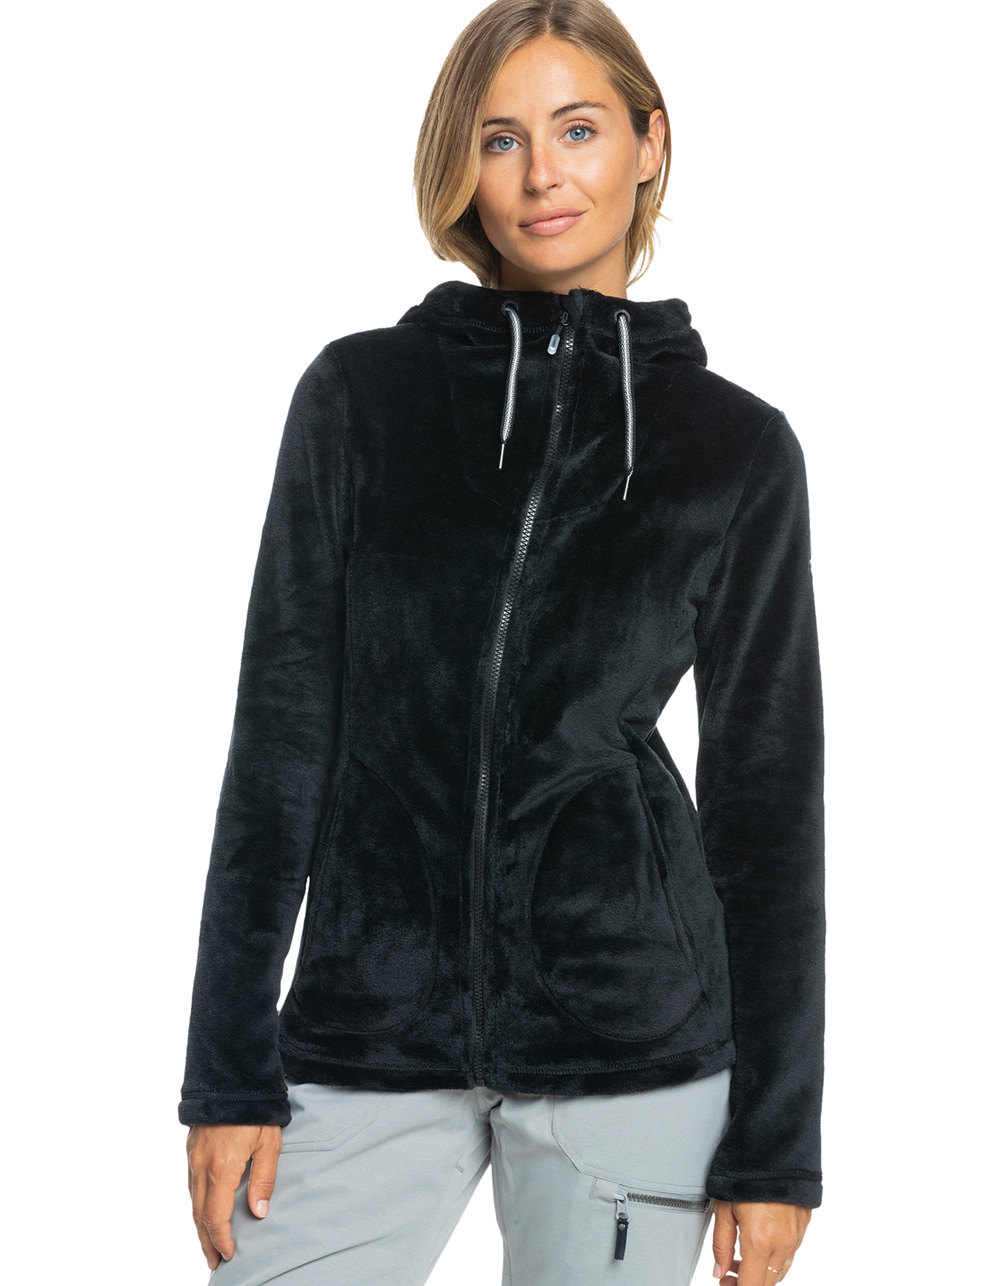 ROXY Tundra Womens Fleece Jacket